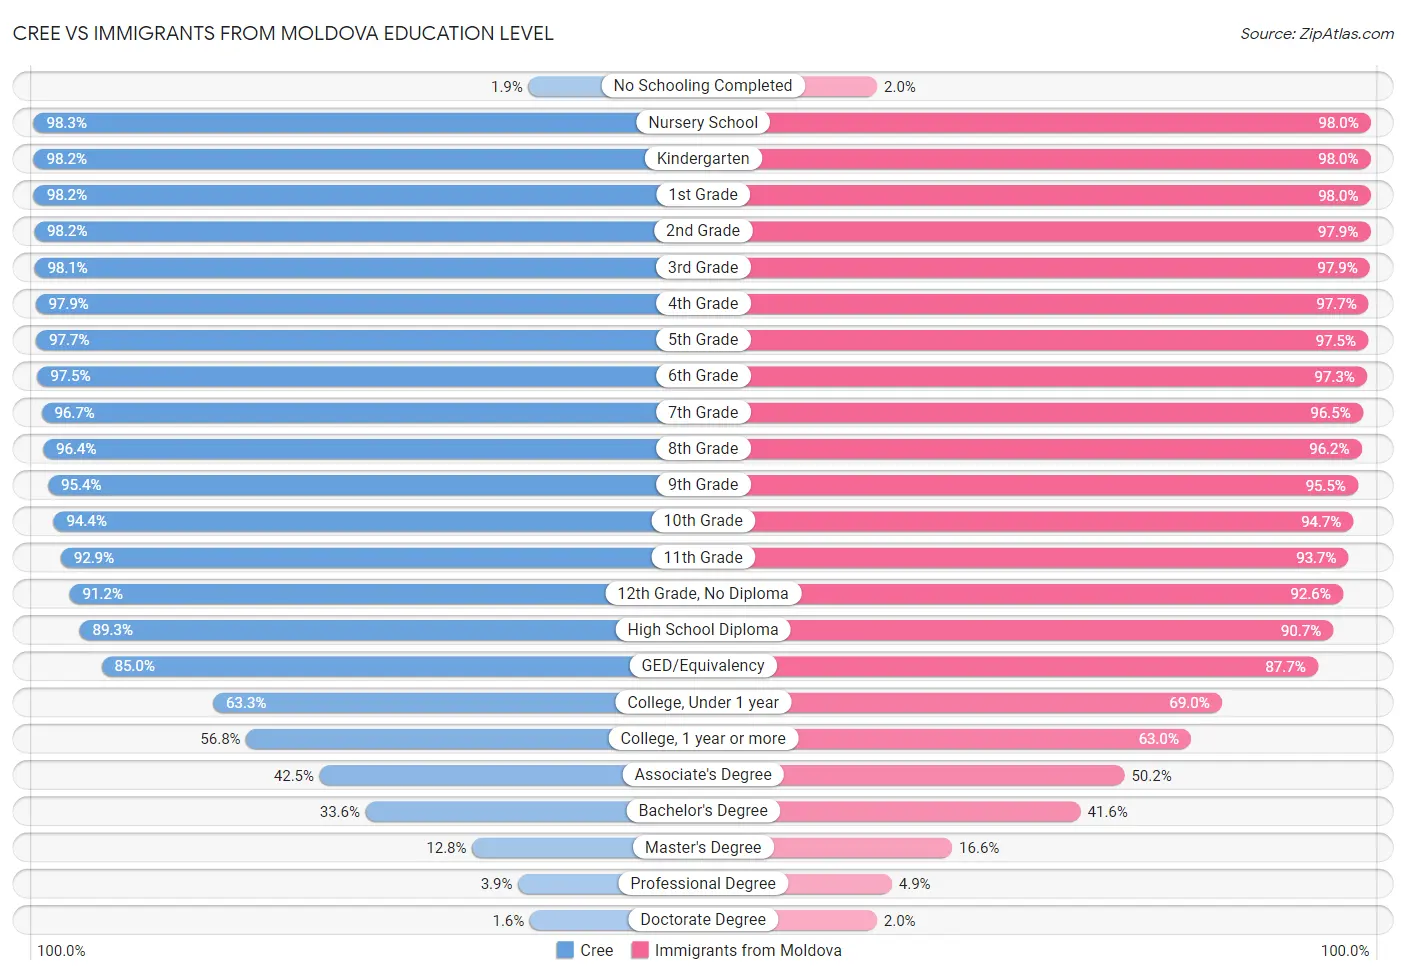 Cree vs Immigrants from Moldova Education Level